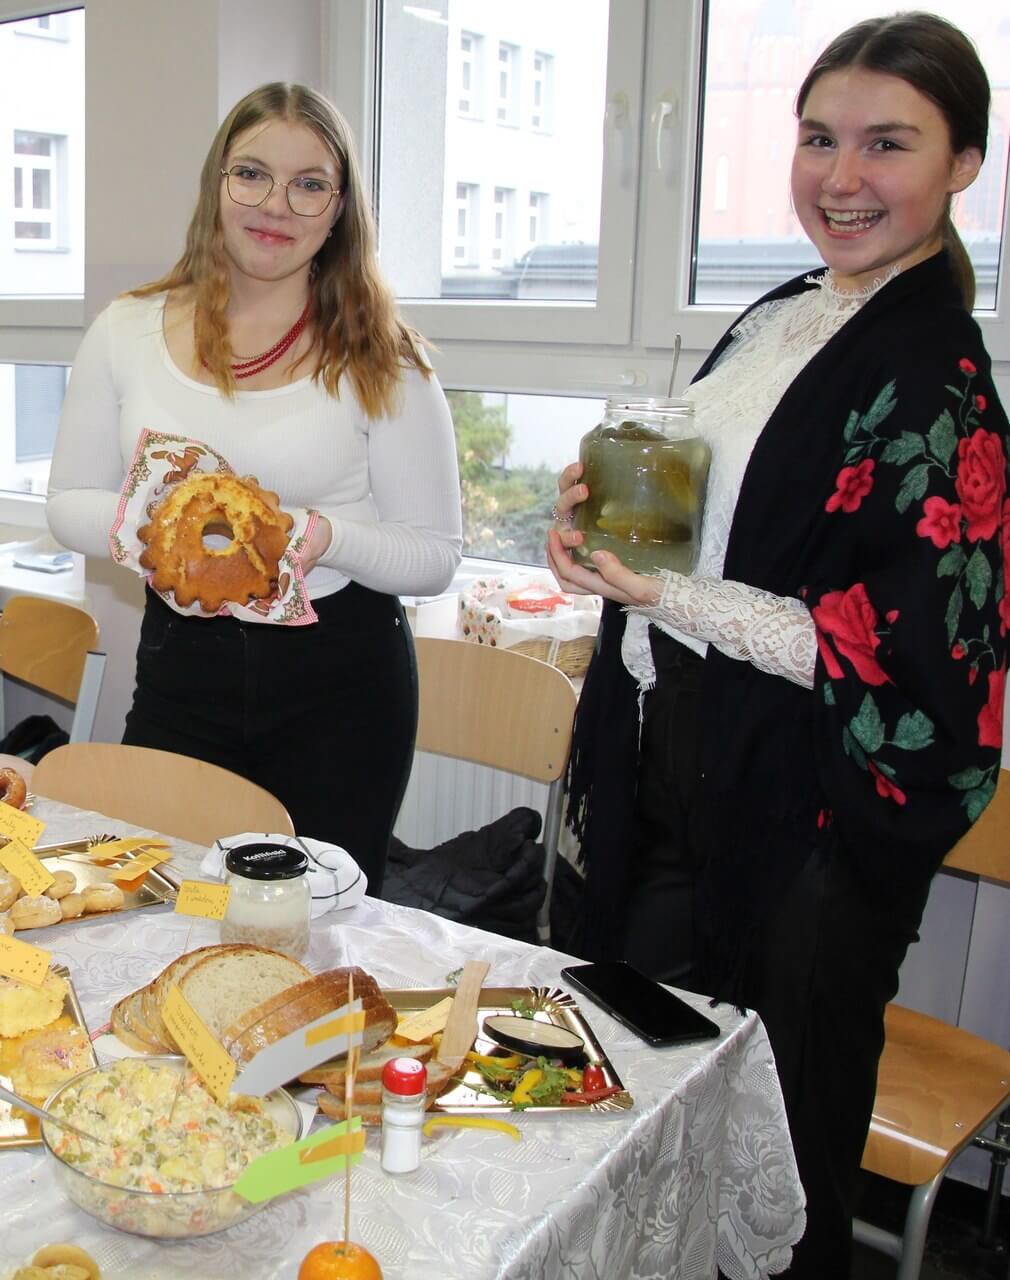 Na finał Szkolnego Tygodnia Edukacji Regionalnej uczniowie przygotowali tradycyjne stoiska kulinarne z różnymi smakołykami. Zdj. Sabina Horzela-Piskula